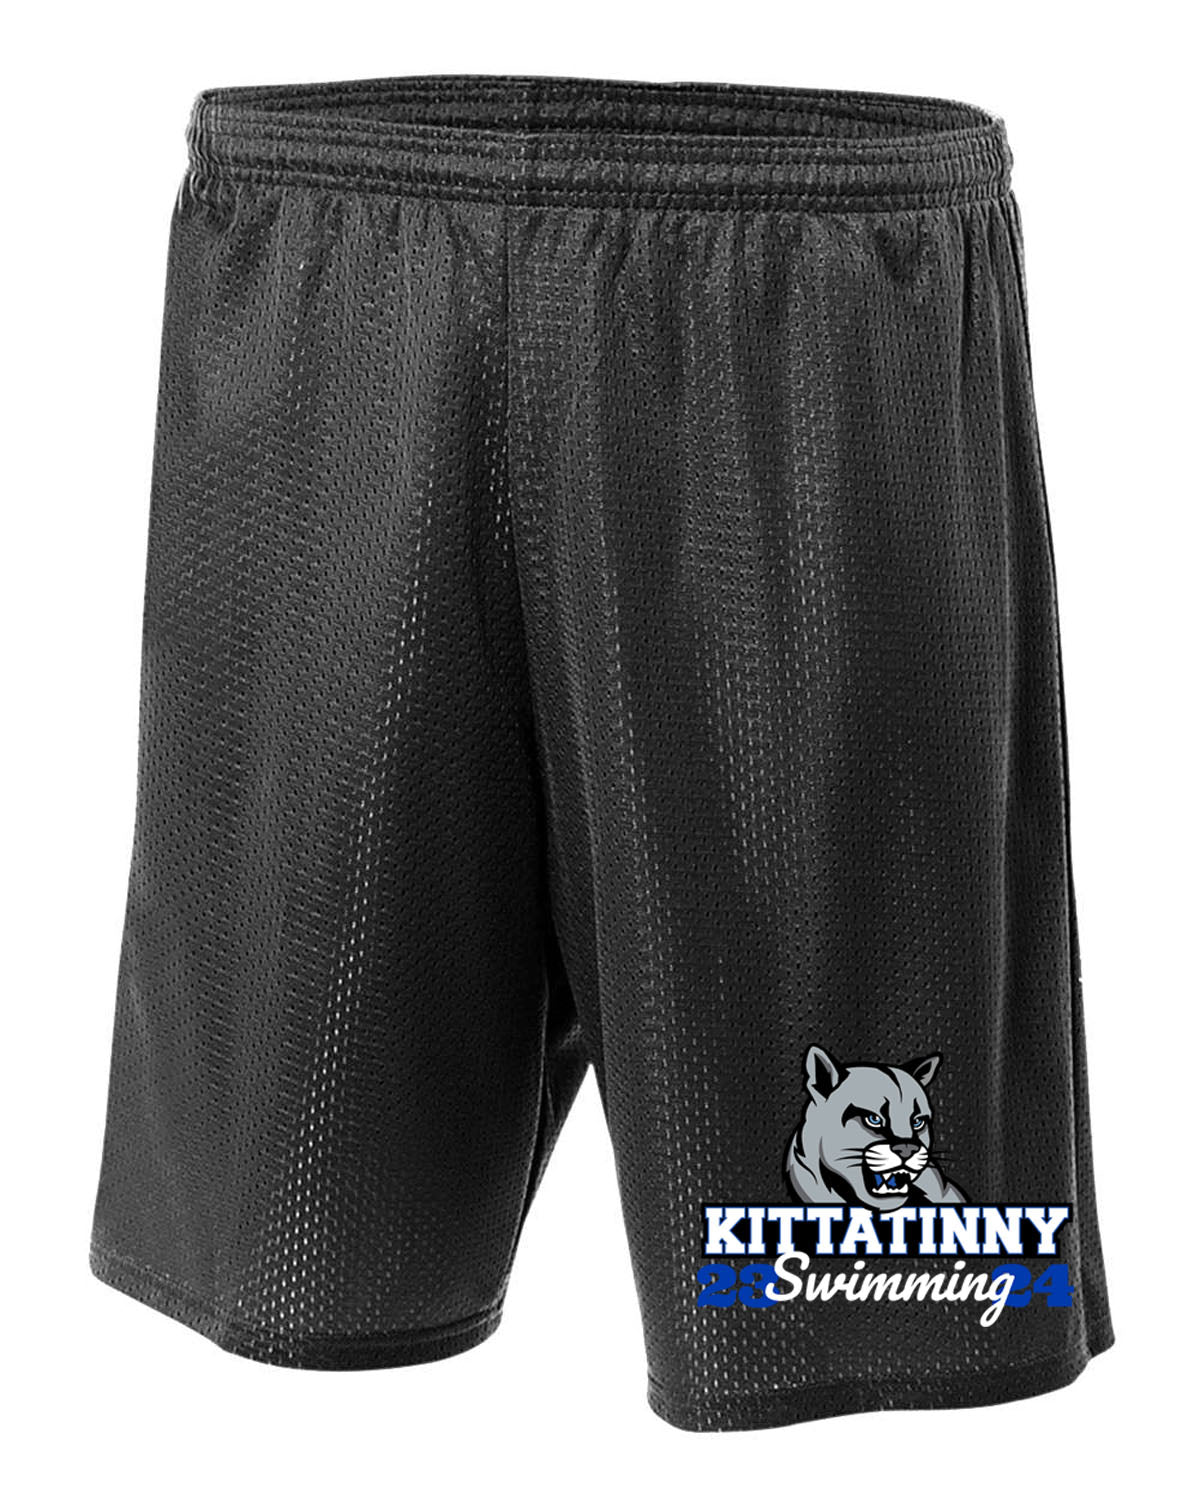 Kittatinny Swimming Design 2 Mesh Shorts